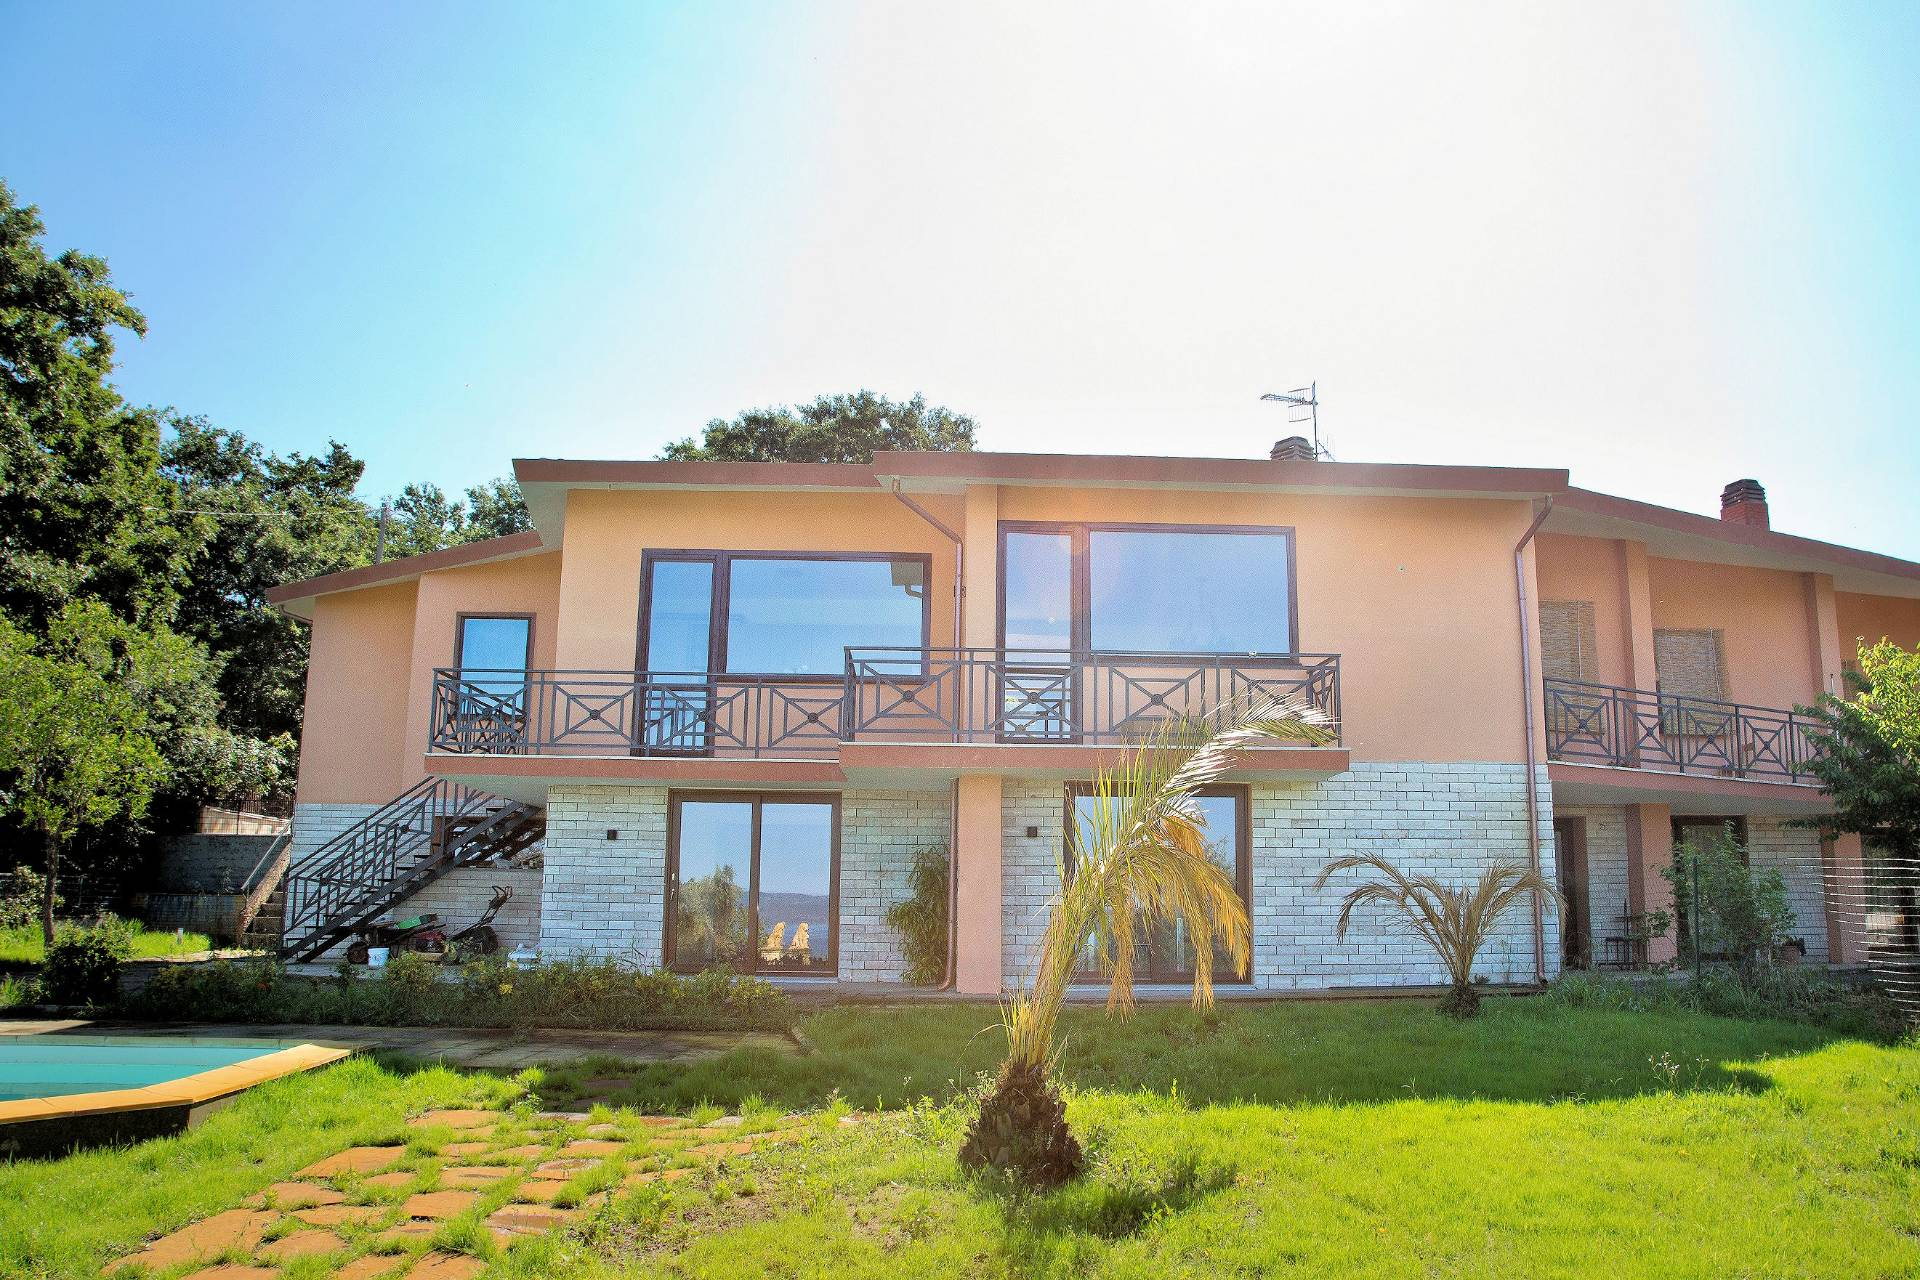 Villa Bifamiliare in vendita a Bolsena, 9 locali, prezzo € 320.000 | CambioCasa.it